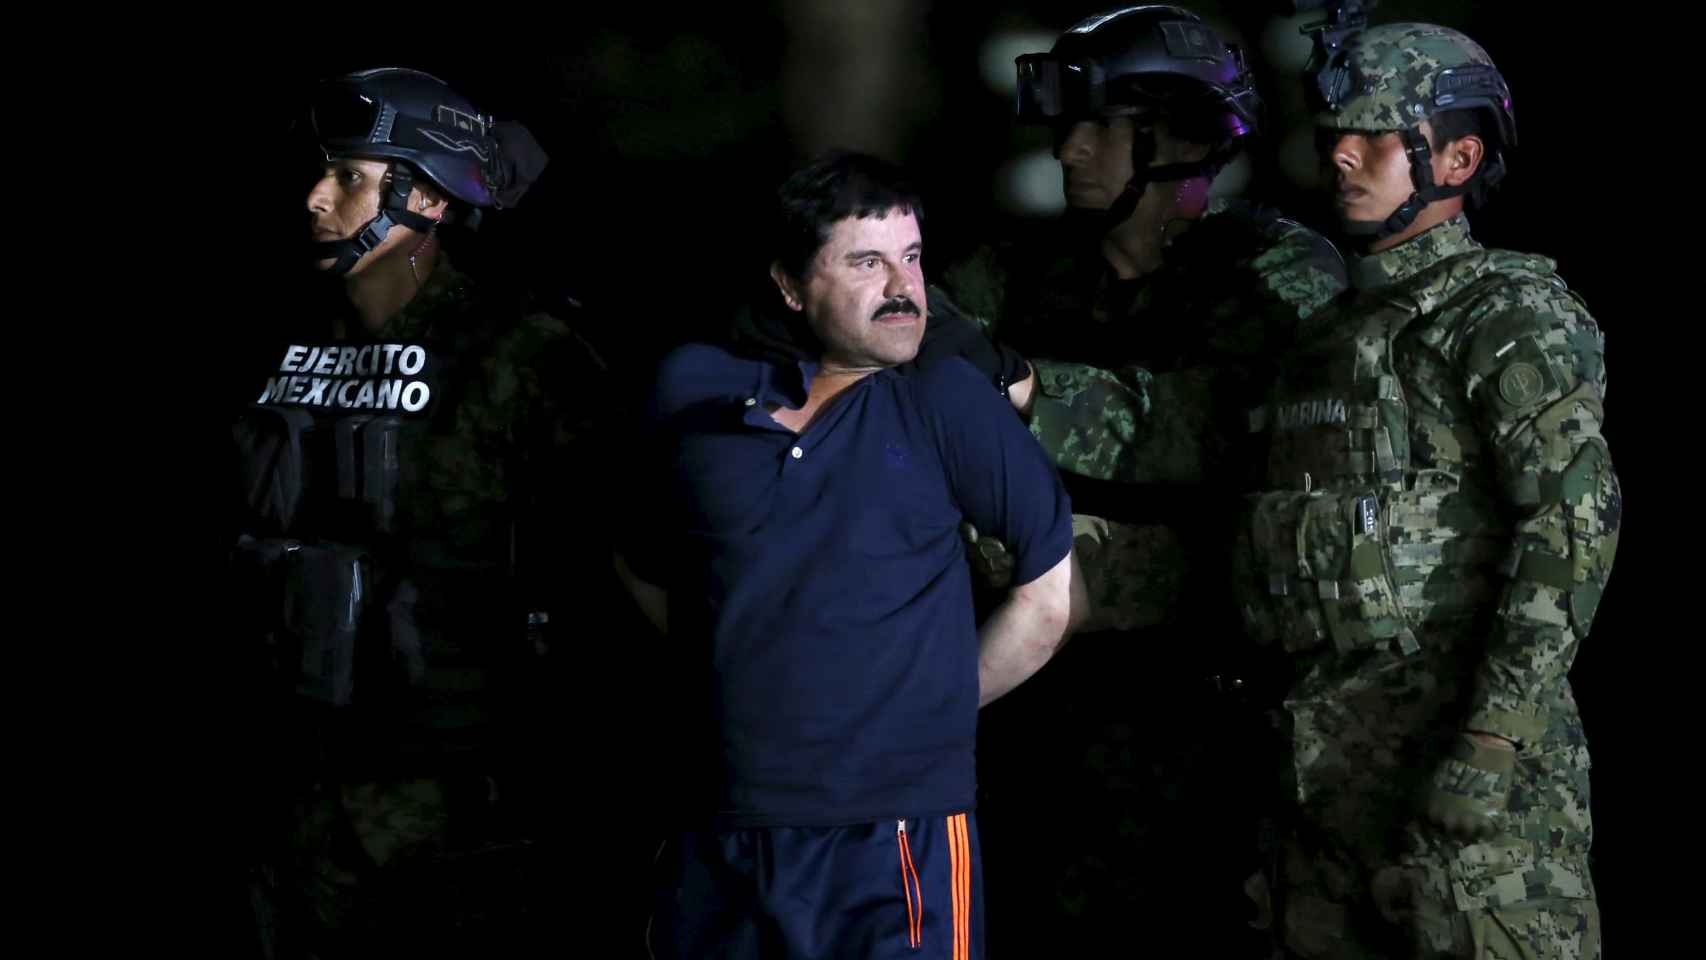 El Chapo Guzmán, en una imagen difundida por medios mexicanos.